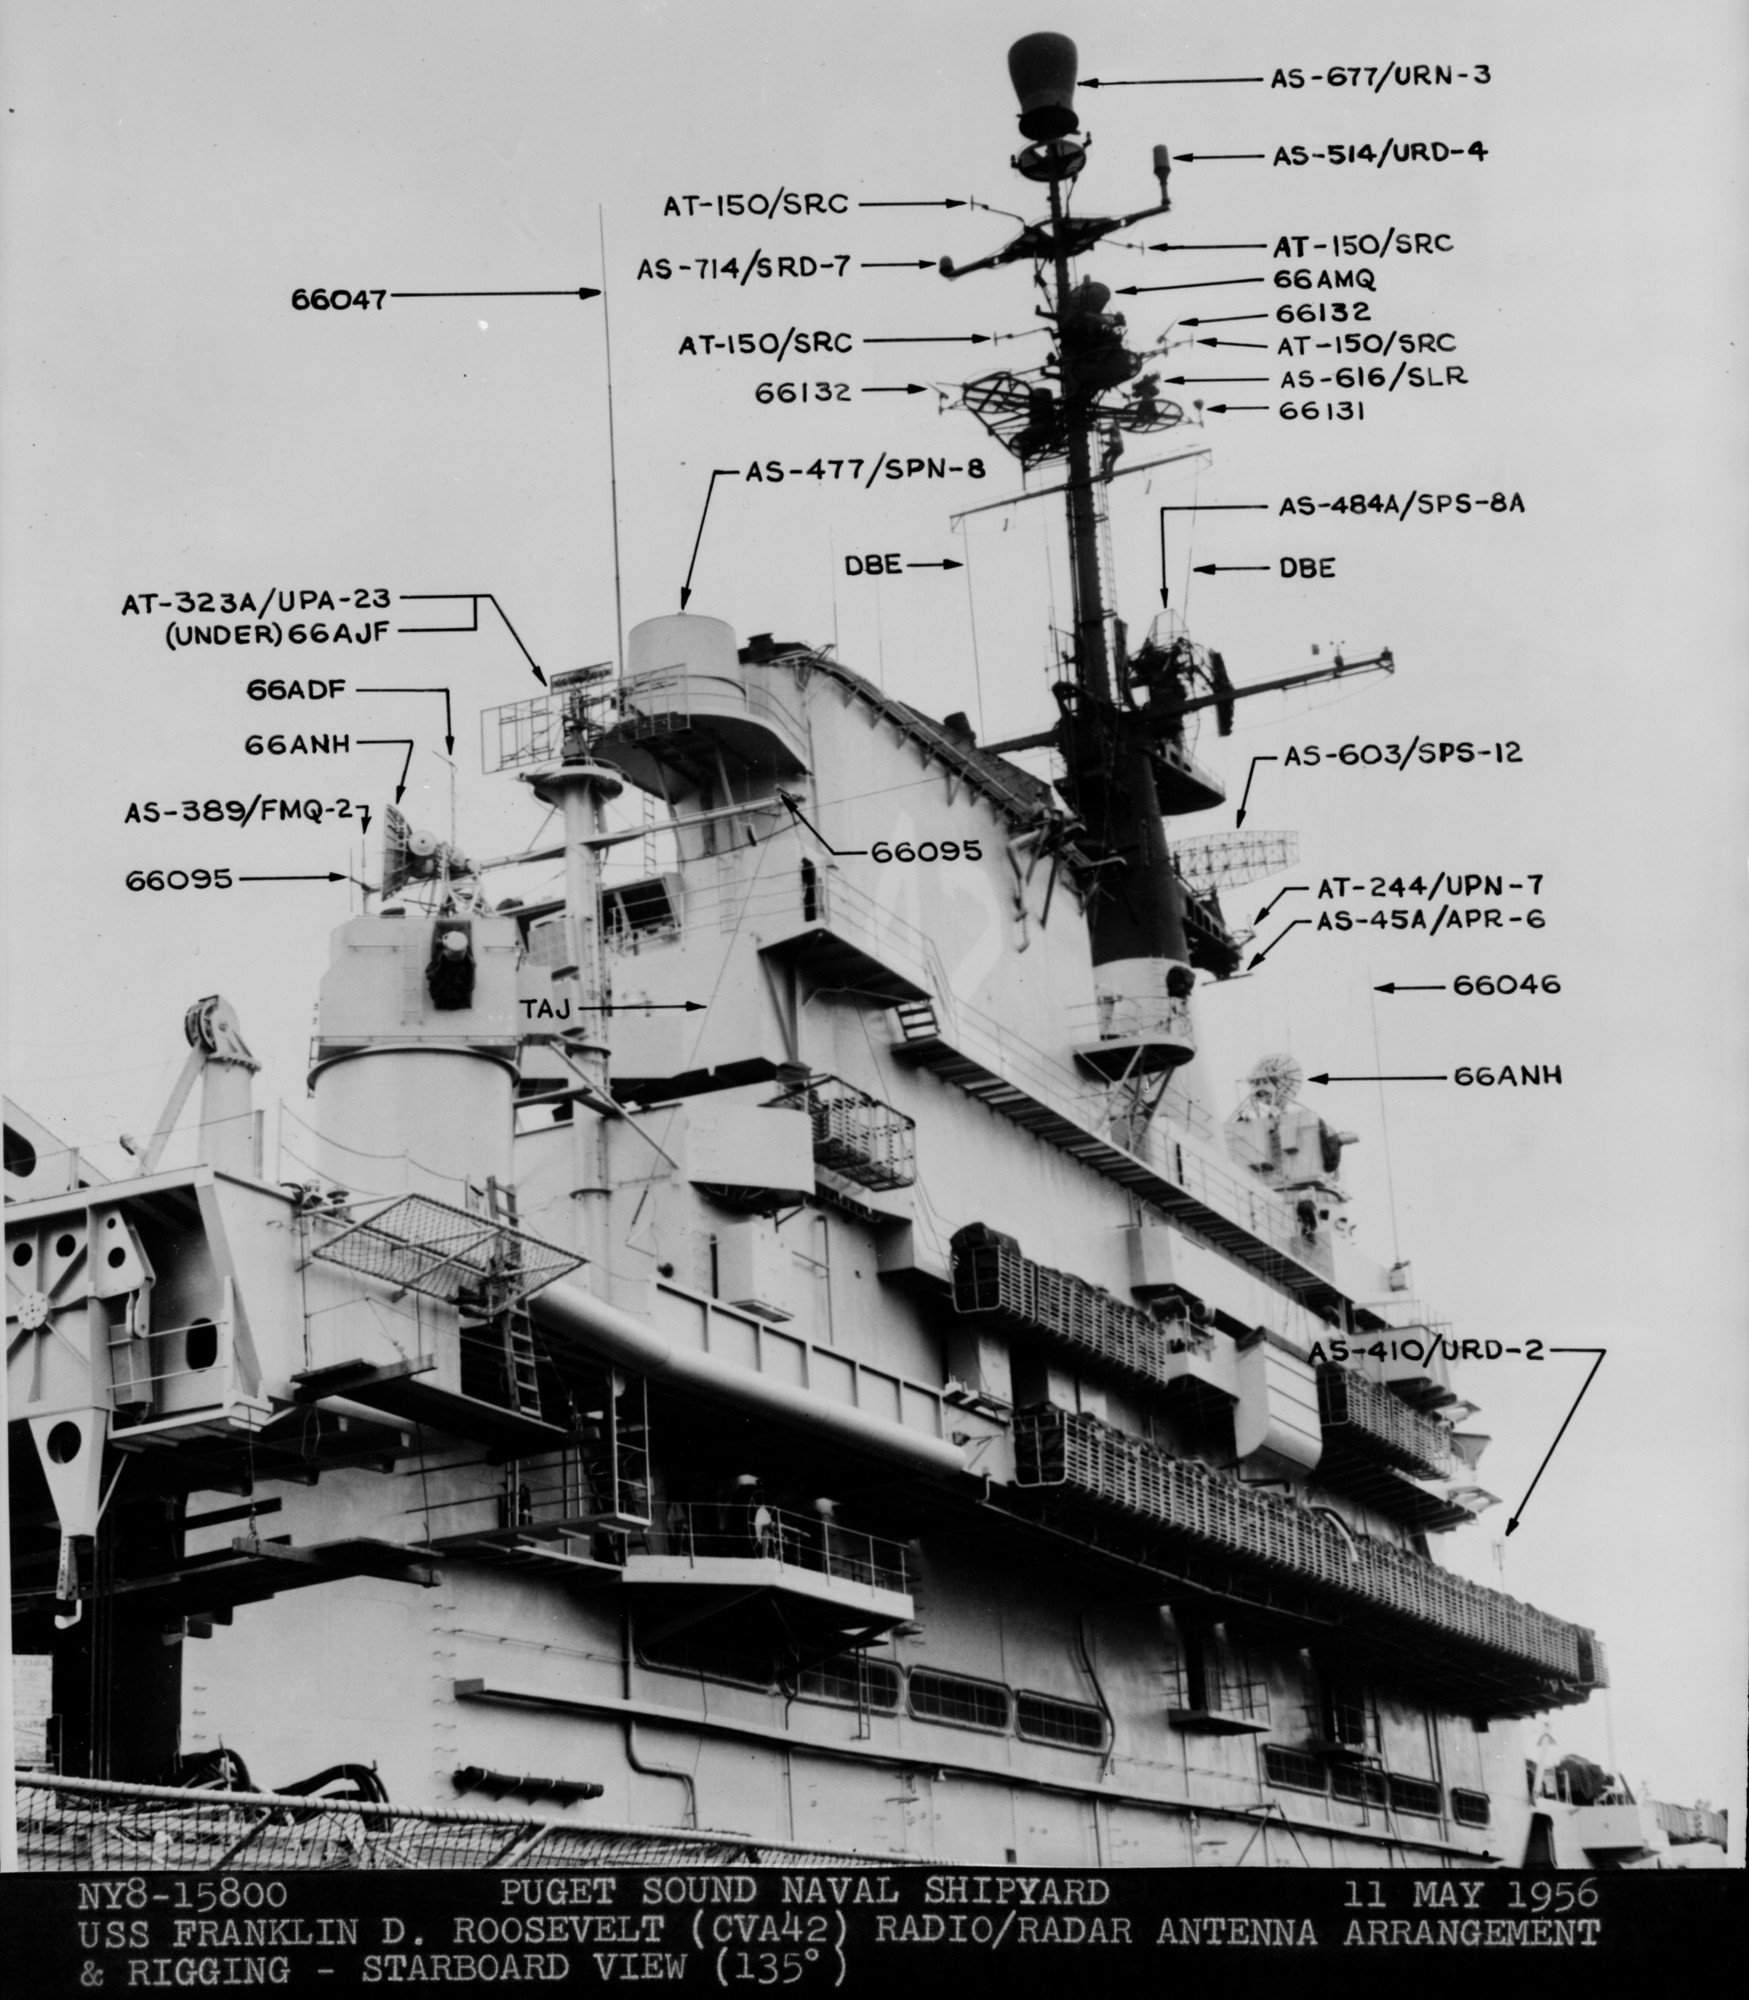 cva-42 uss franklin d. roosevelt midway class aircraft carrier 59